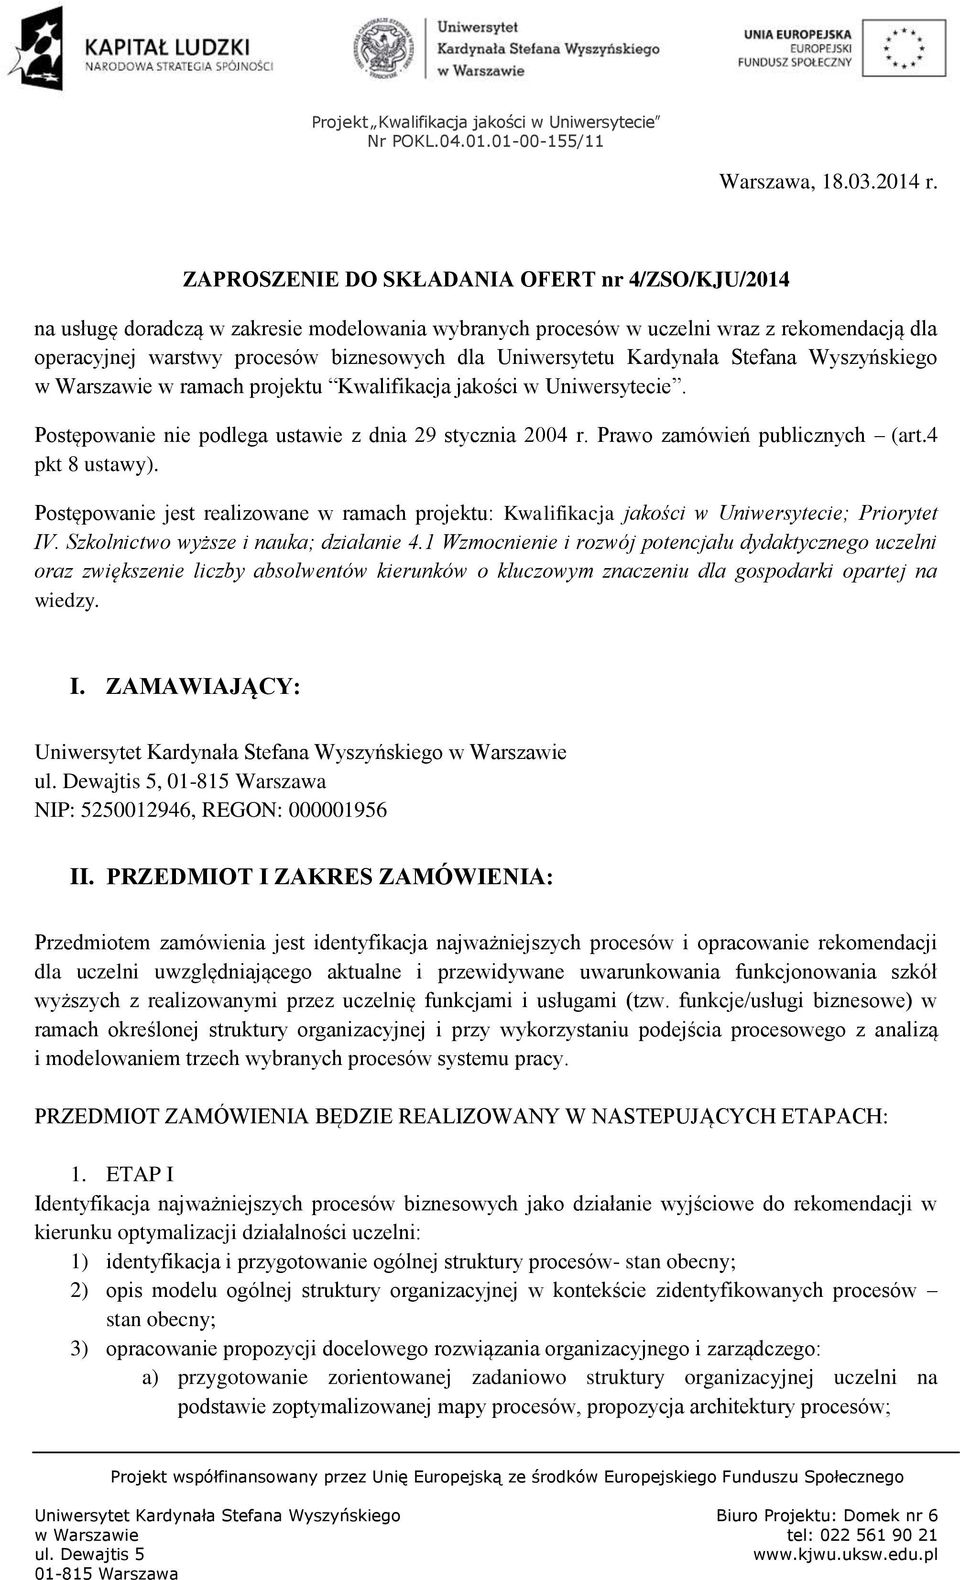 Uniwersytetu Kardynała Stefana Wyszyńskiego w Warszawie w ramach projektu Kwalifikacja jakości w Uniwersytecie. Postępowanie nie podlega ustawie z dnia 29 stycznia 2004 r.